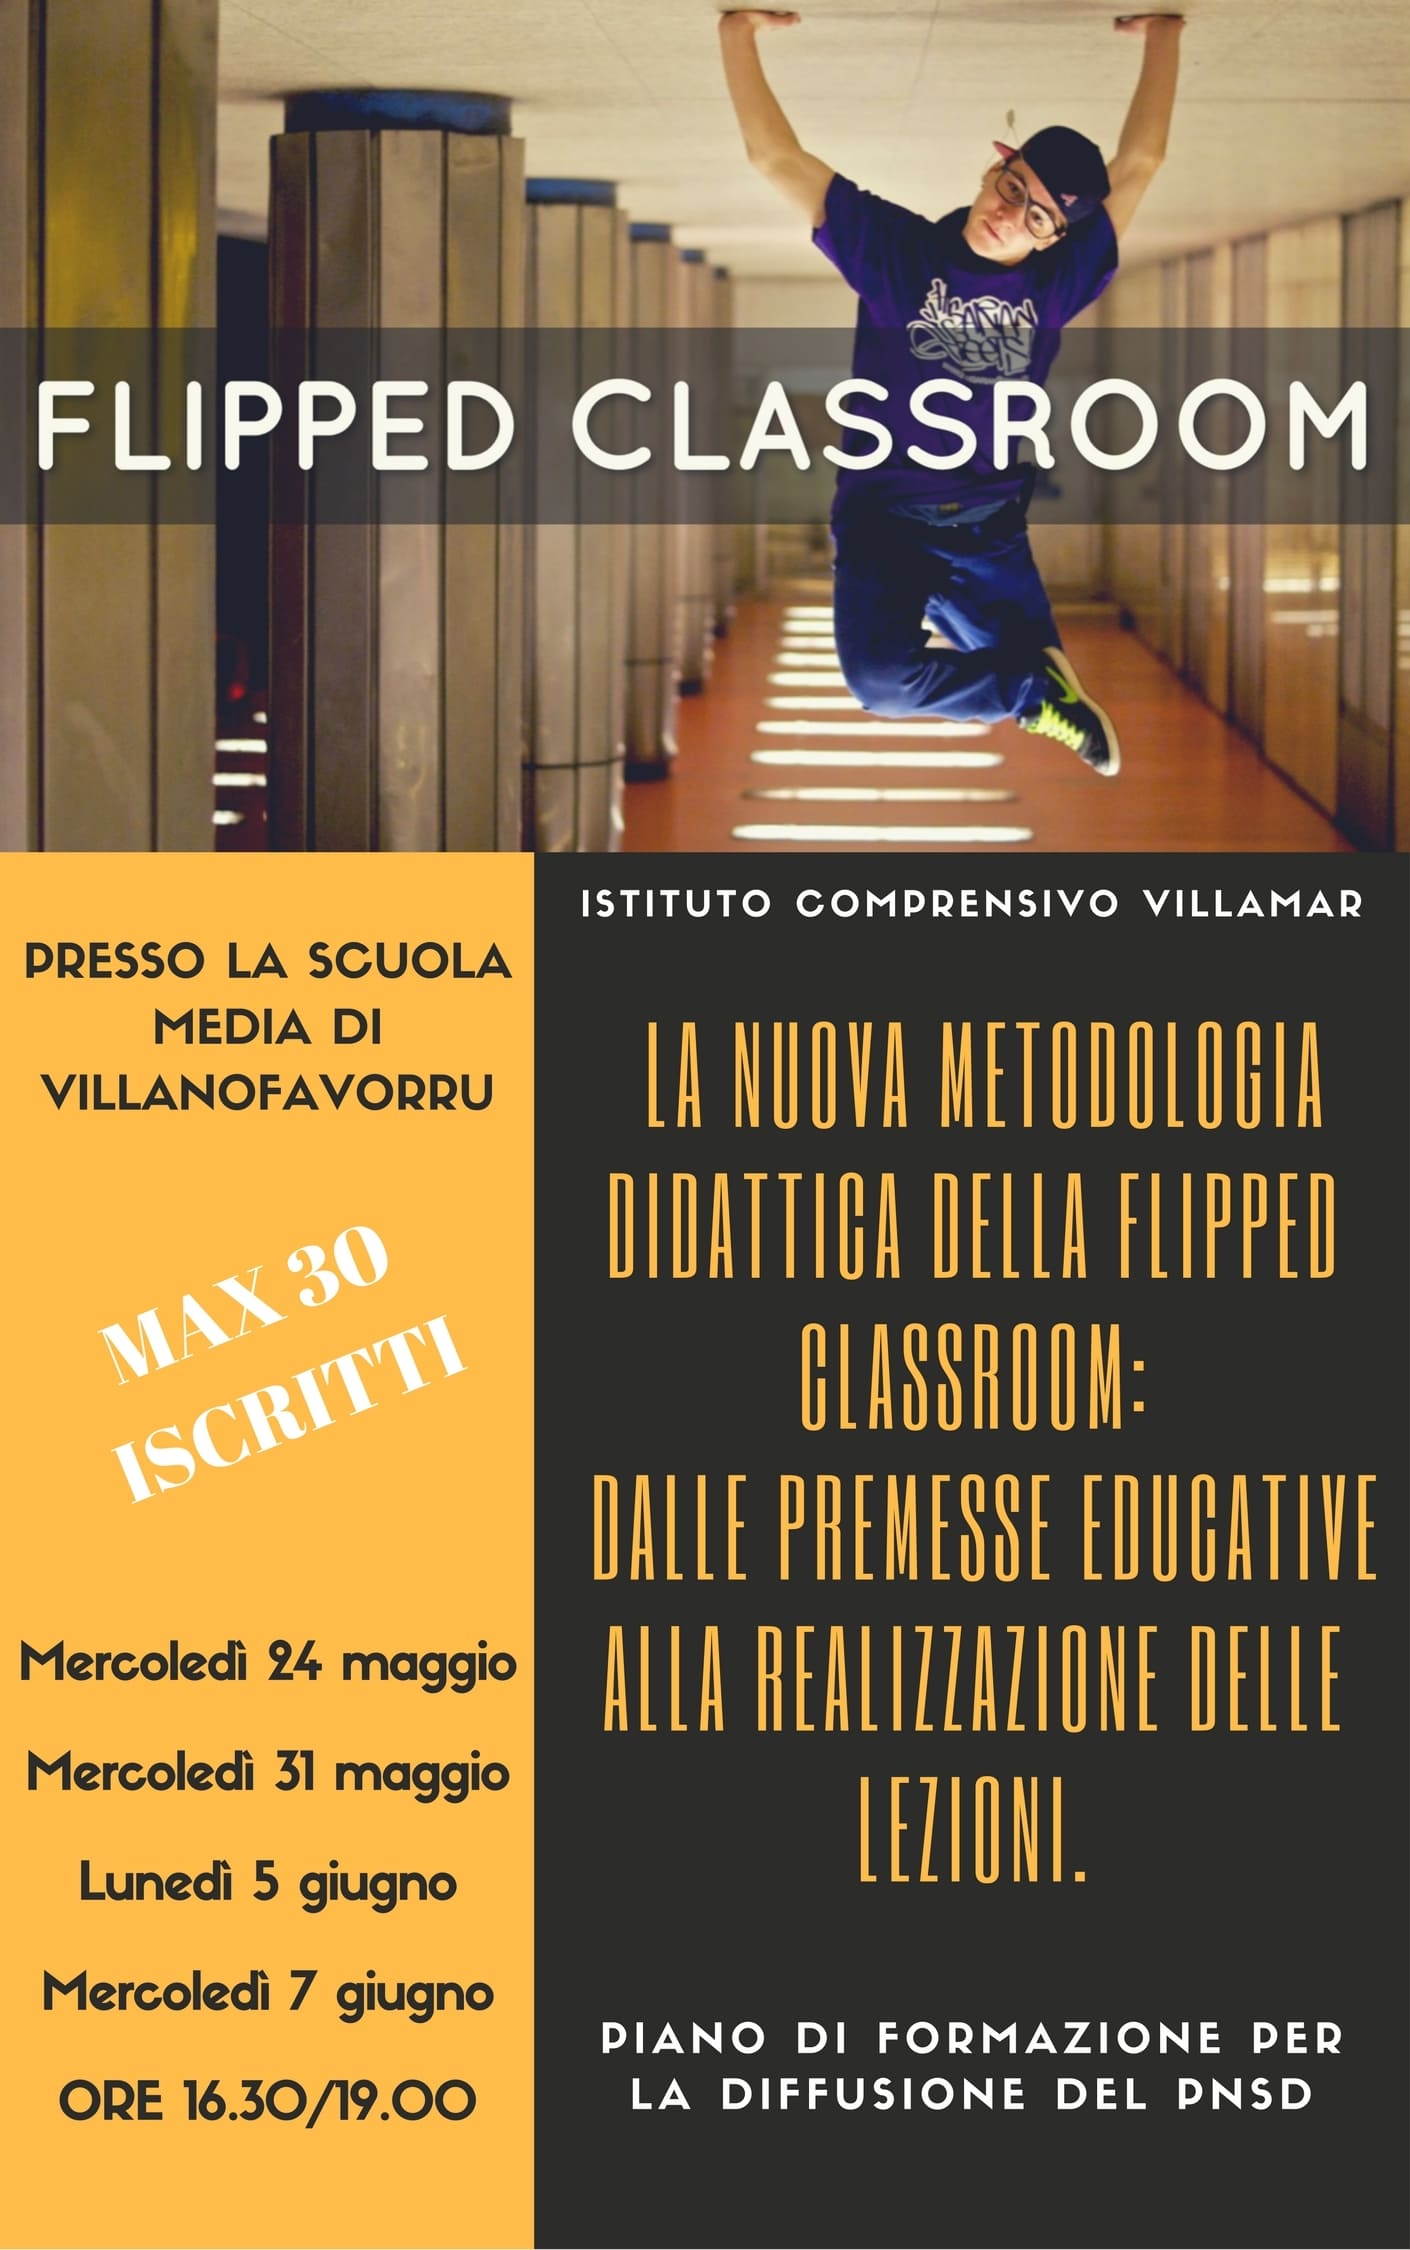  La nuova metodologia della Flipped Classroom: dalle premesse educative alla realizzazione delle lezioni